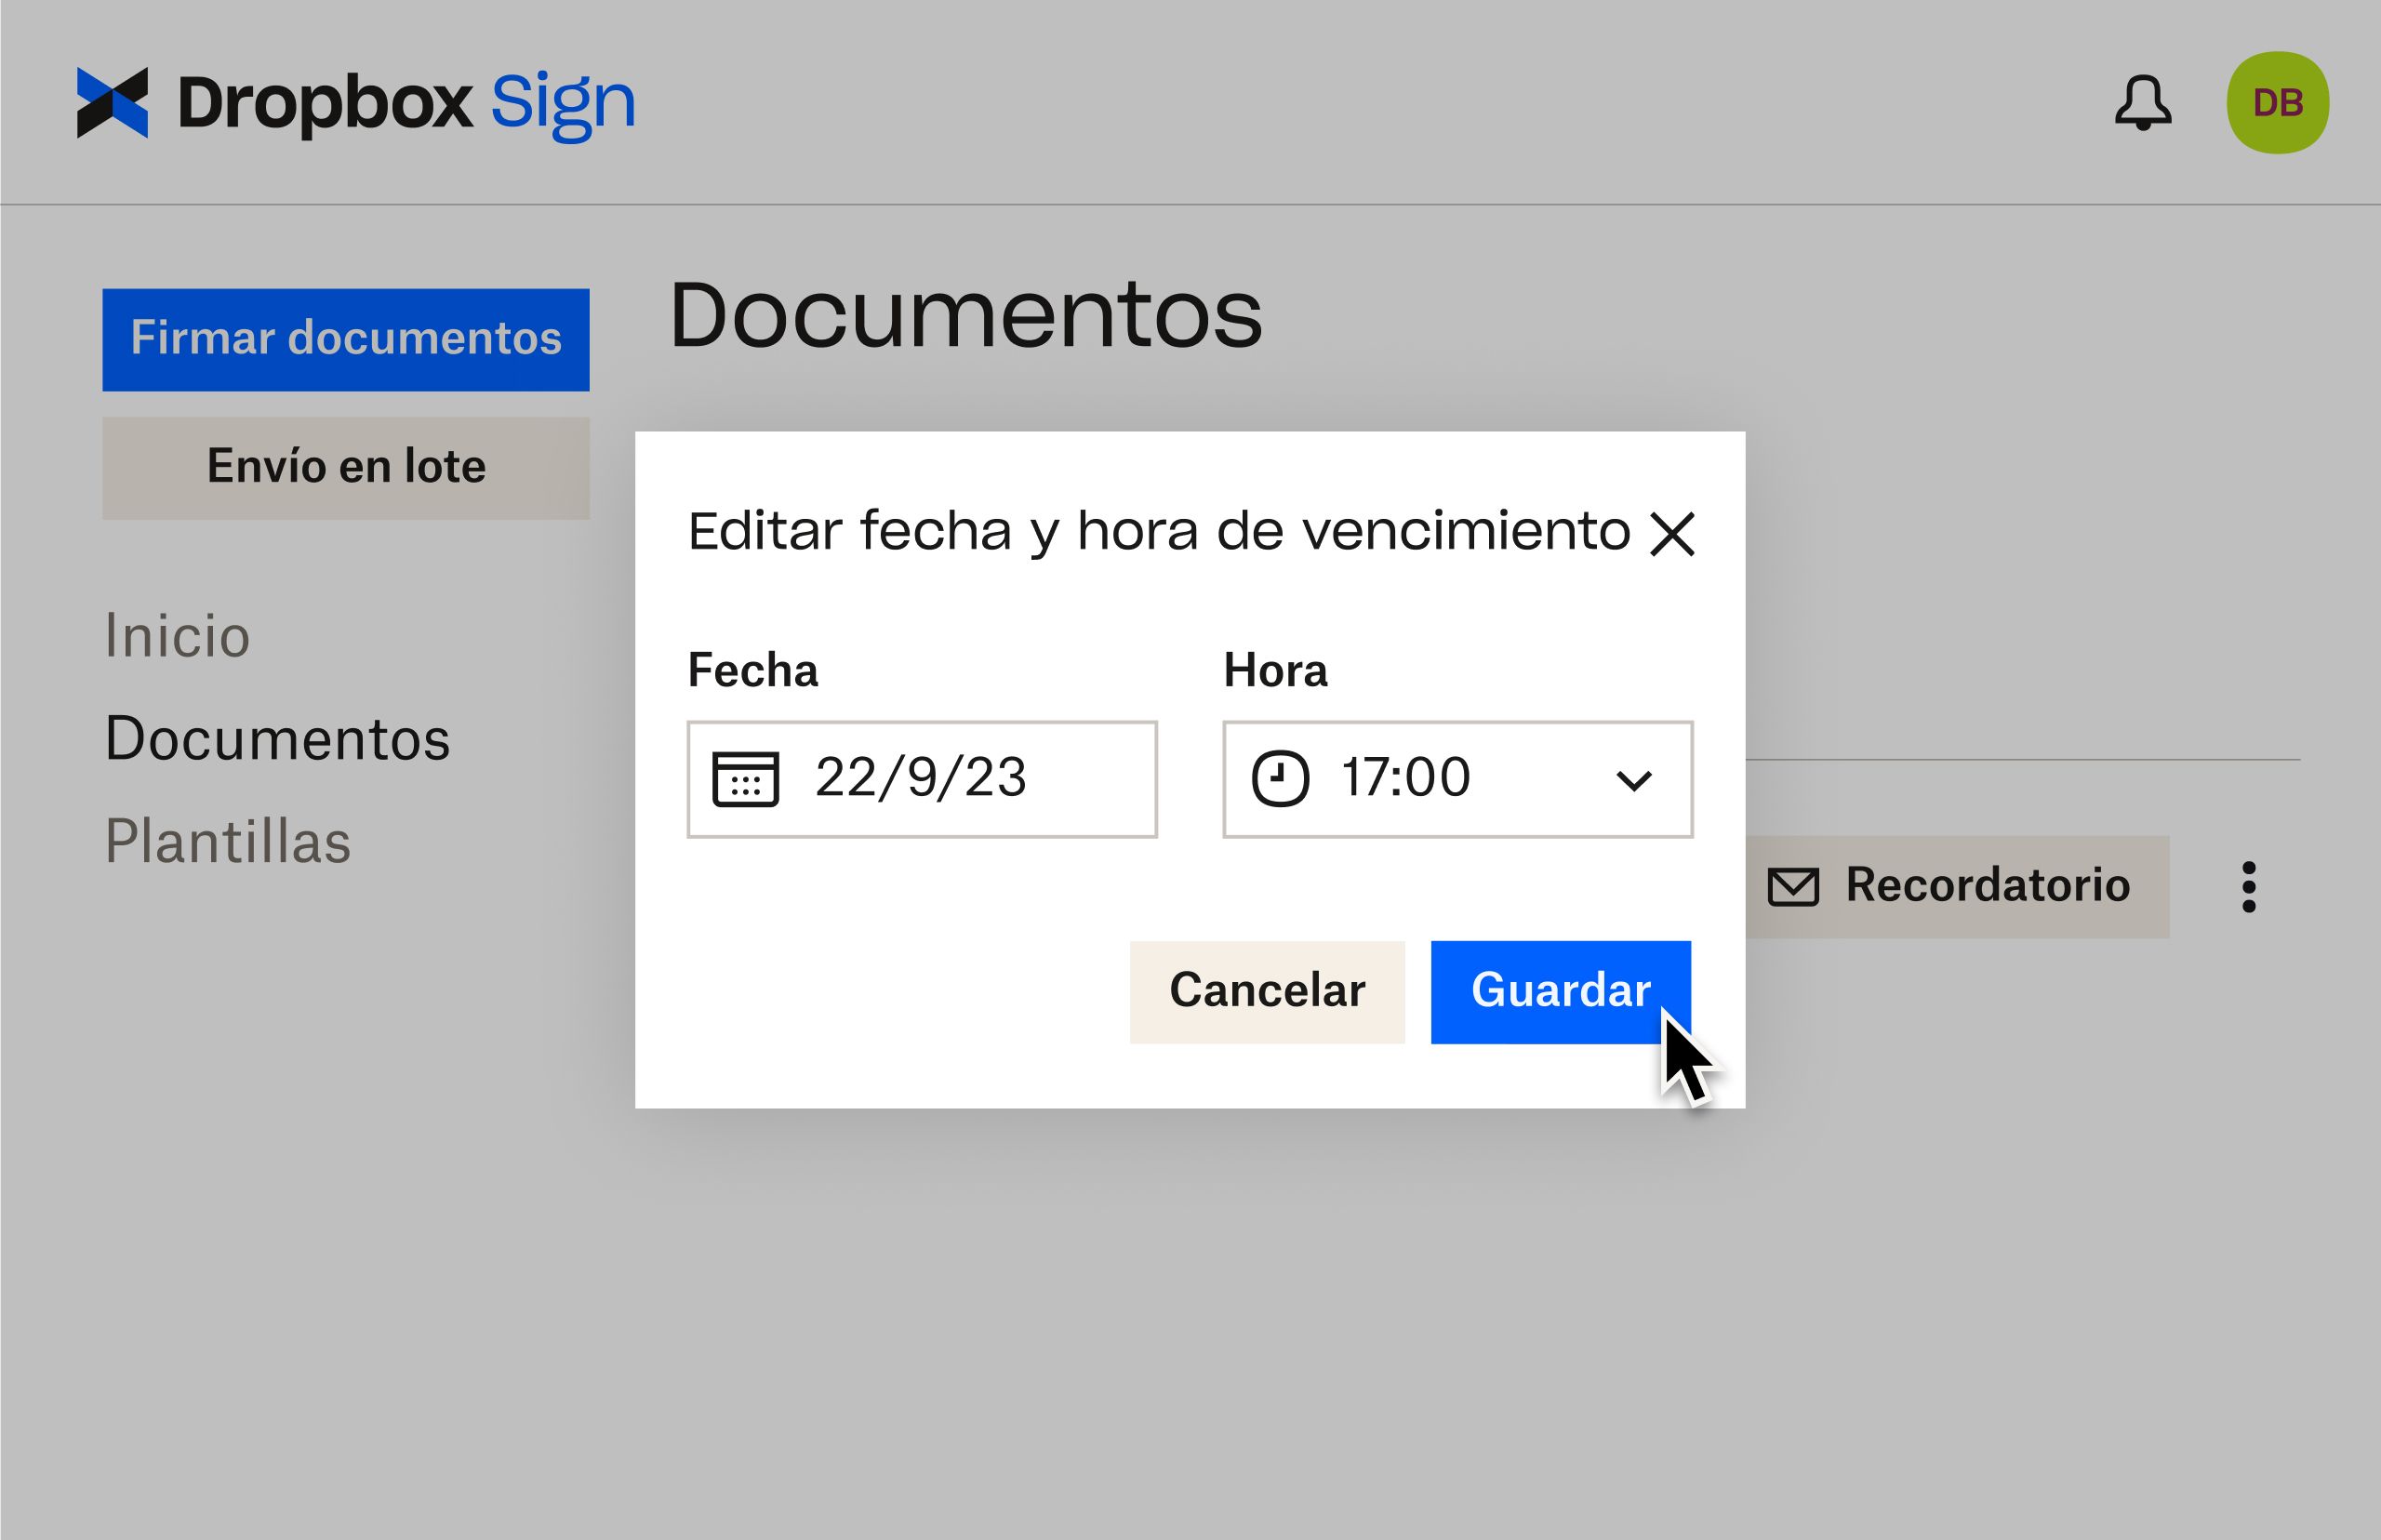 Interfaz de usuario de Dropbox Sign en la que se muestra cómo cambiar la fecha de vencimiento de un documento después de haberlo enviado para que lo firmen